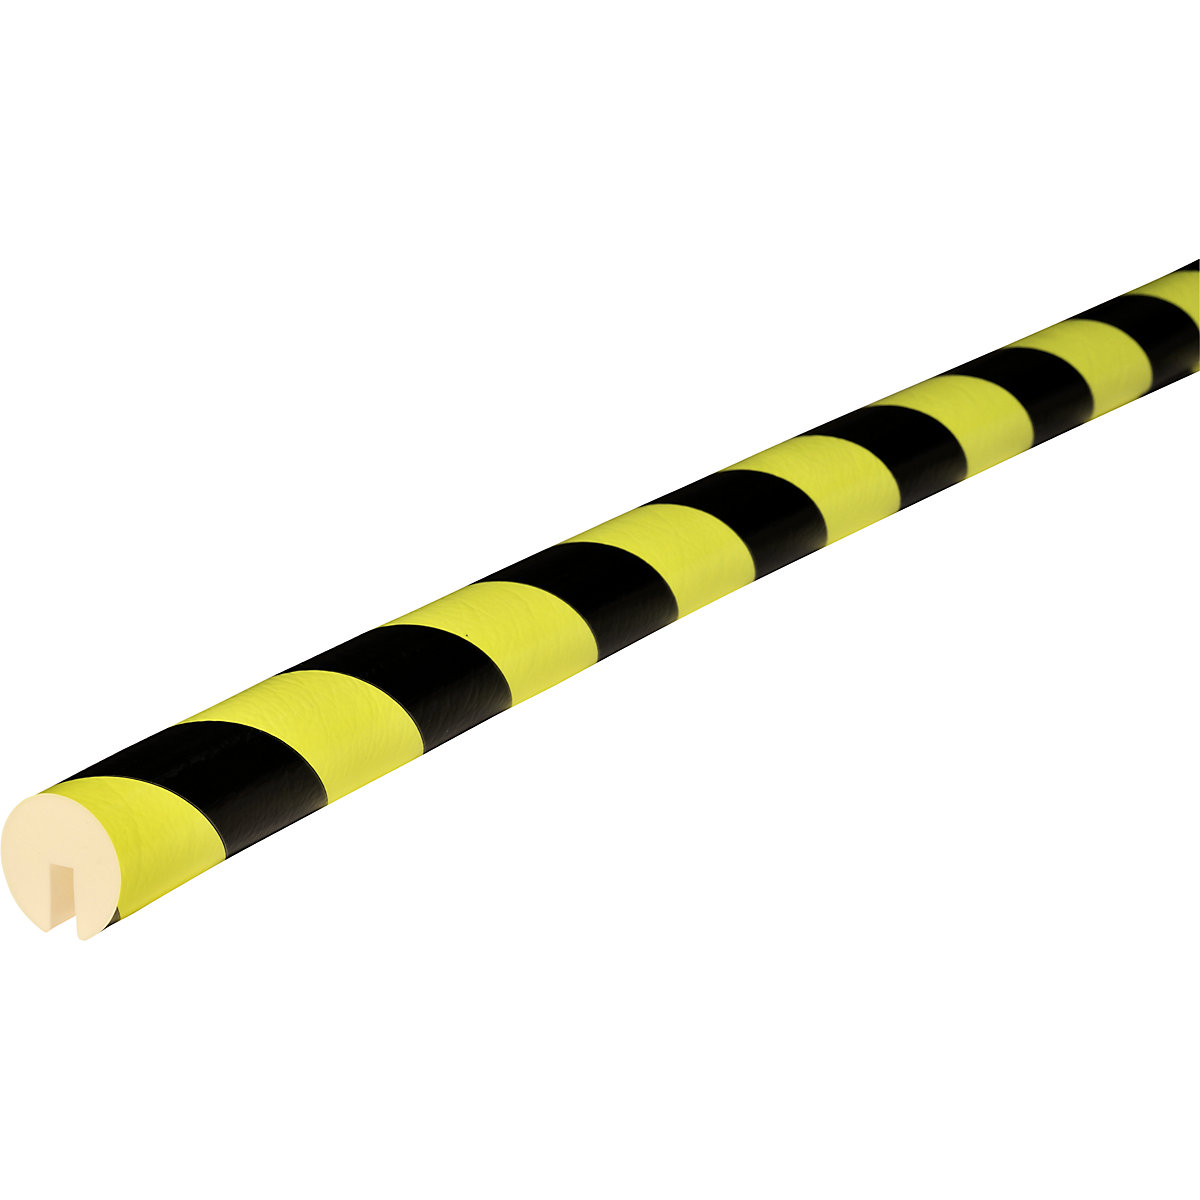 Proteção de rebordos Knuffi® – SHG, tipo B, 1 rolo de 5 m, preto/fluorescente-19